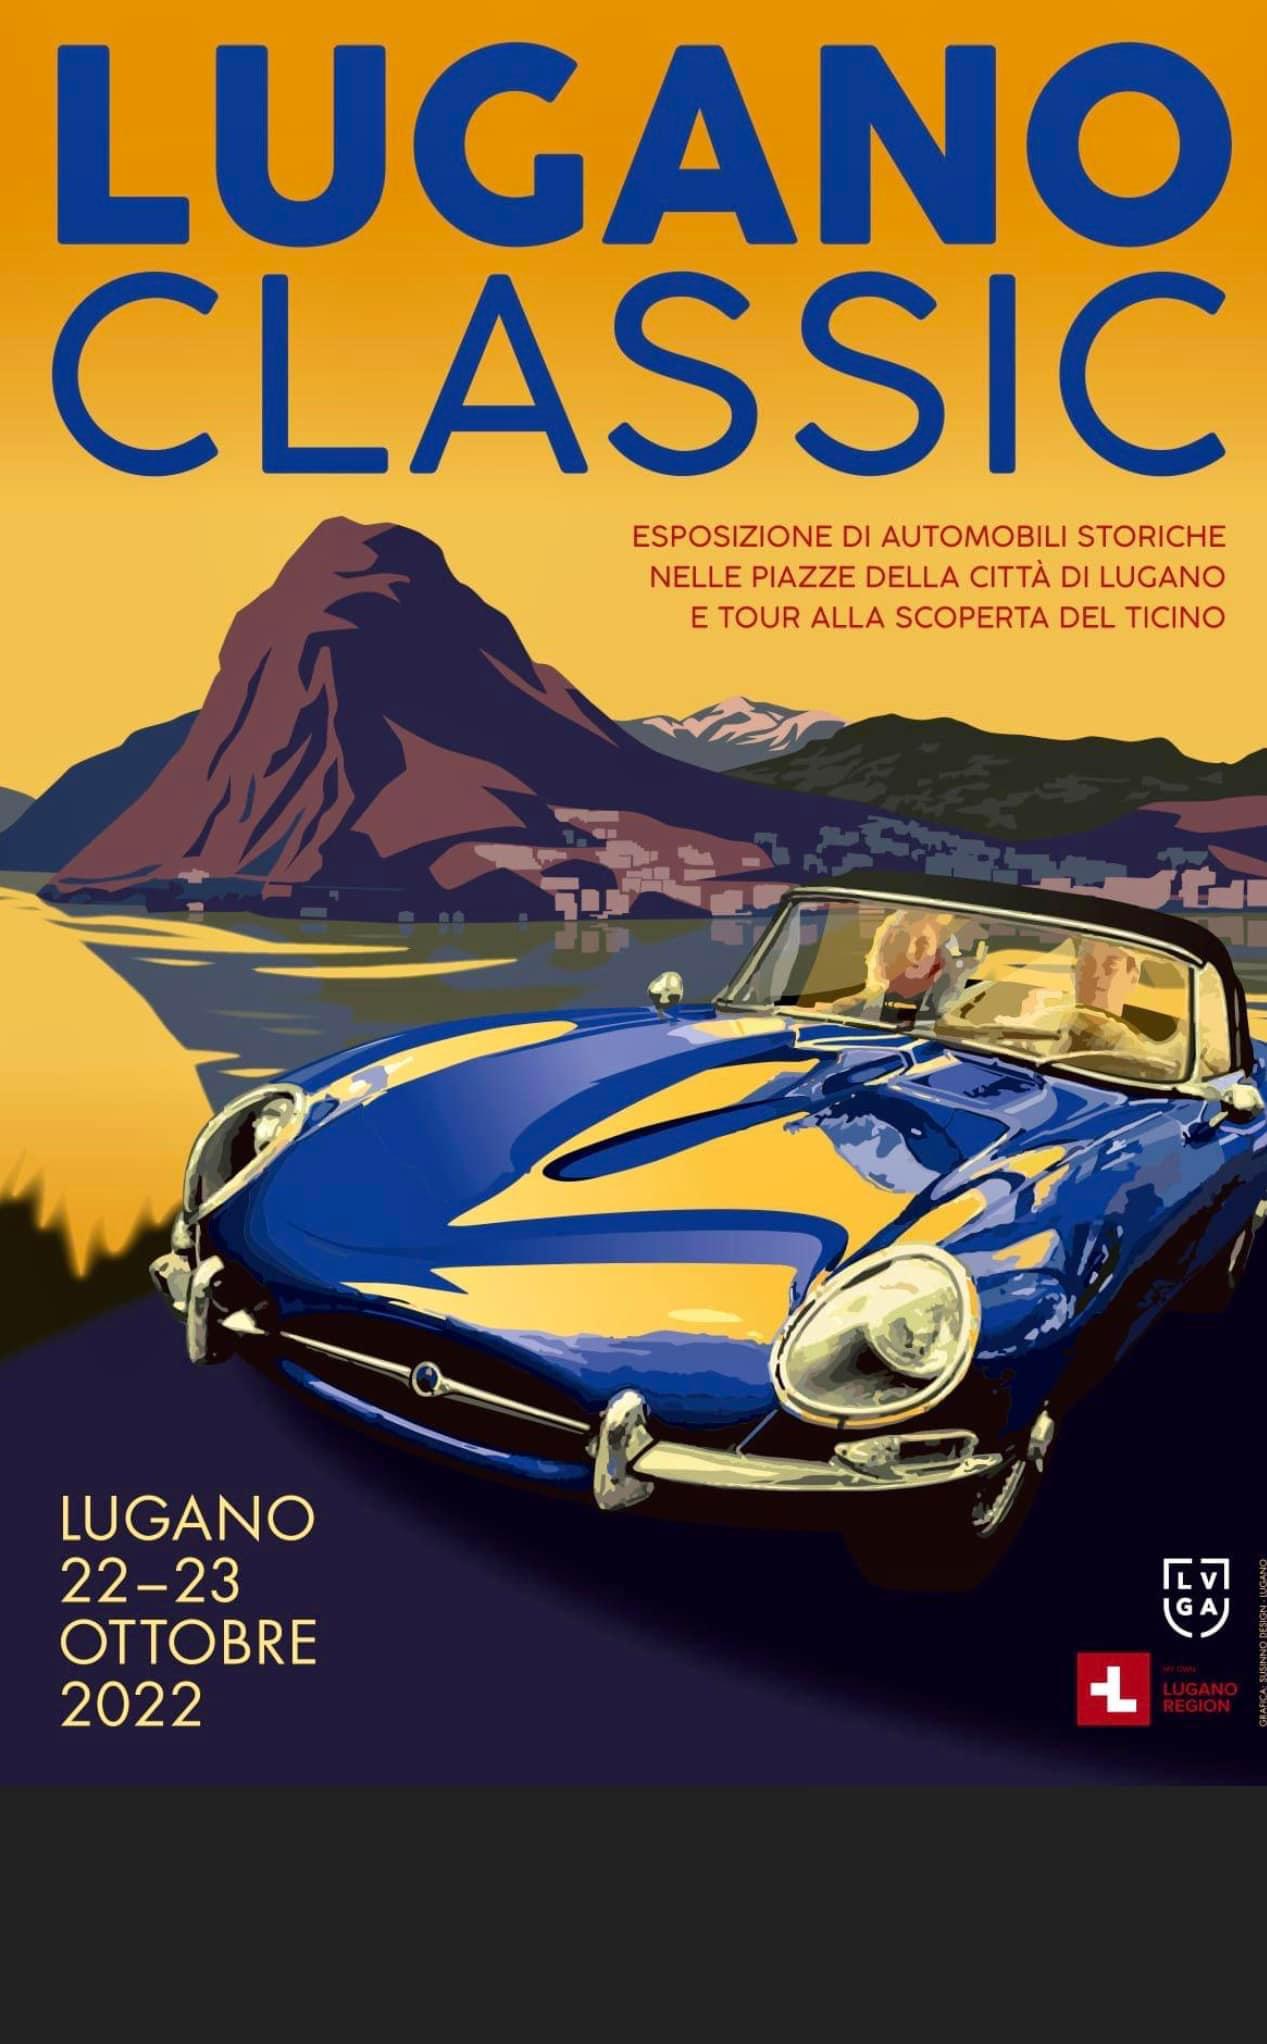 Lugano Classic